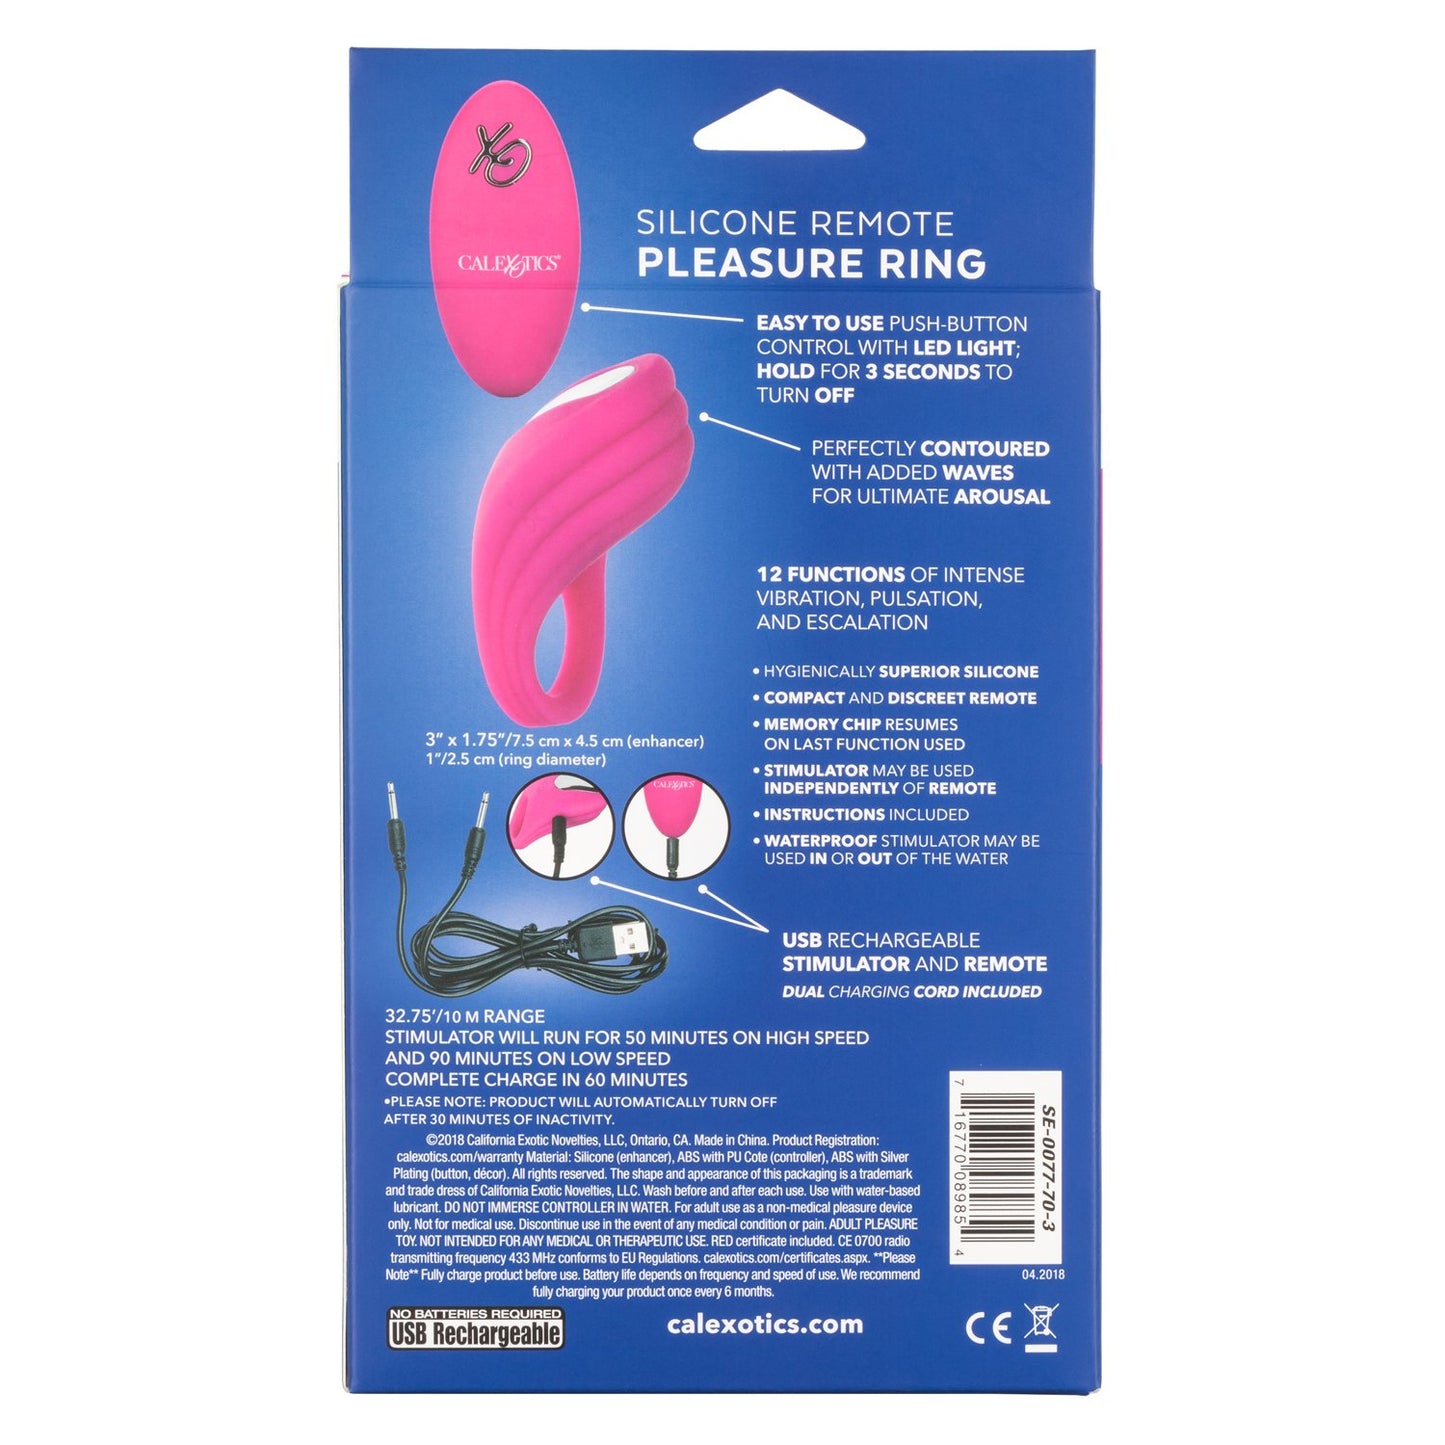 Silicone Remote Pleasure Ring